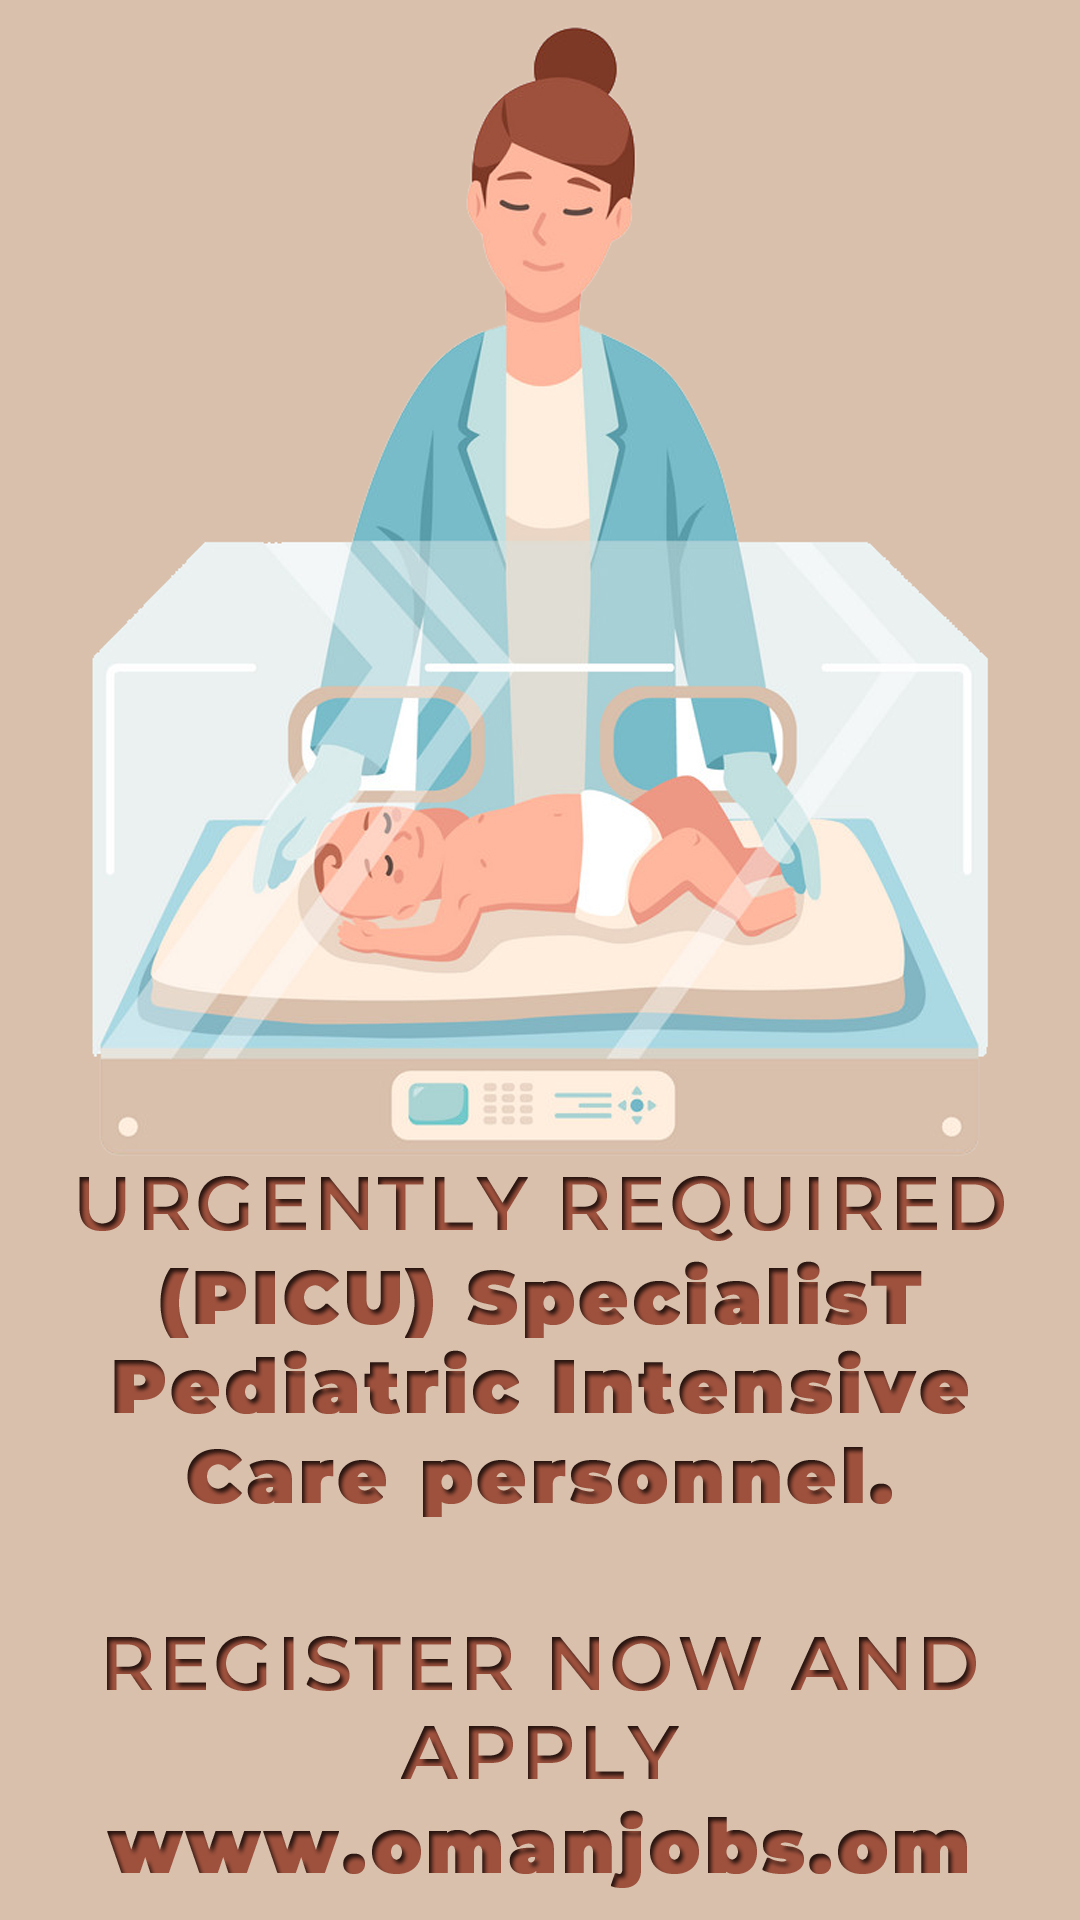 Hiring (PICU) Specialist Pediatric Intensive Care personnel